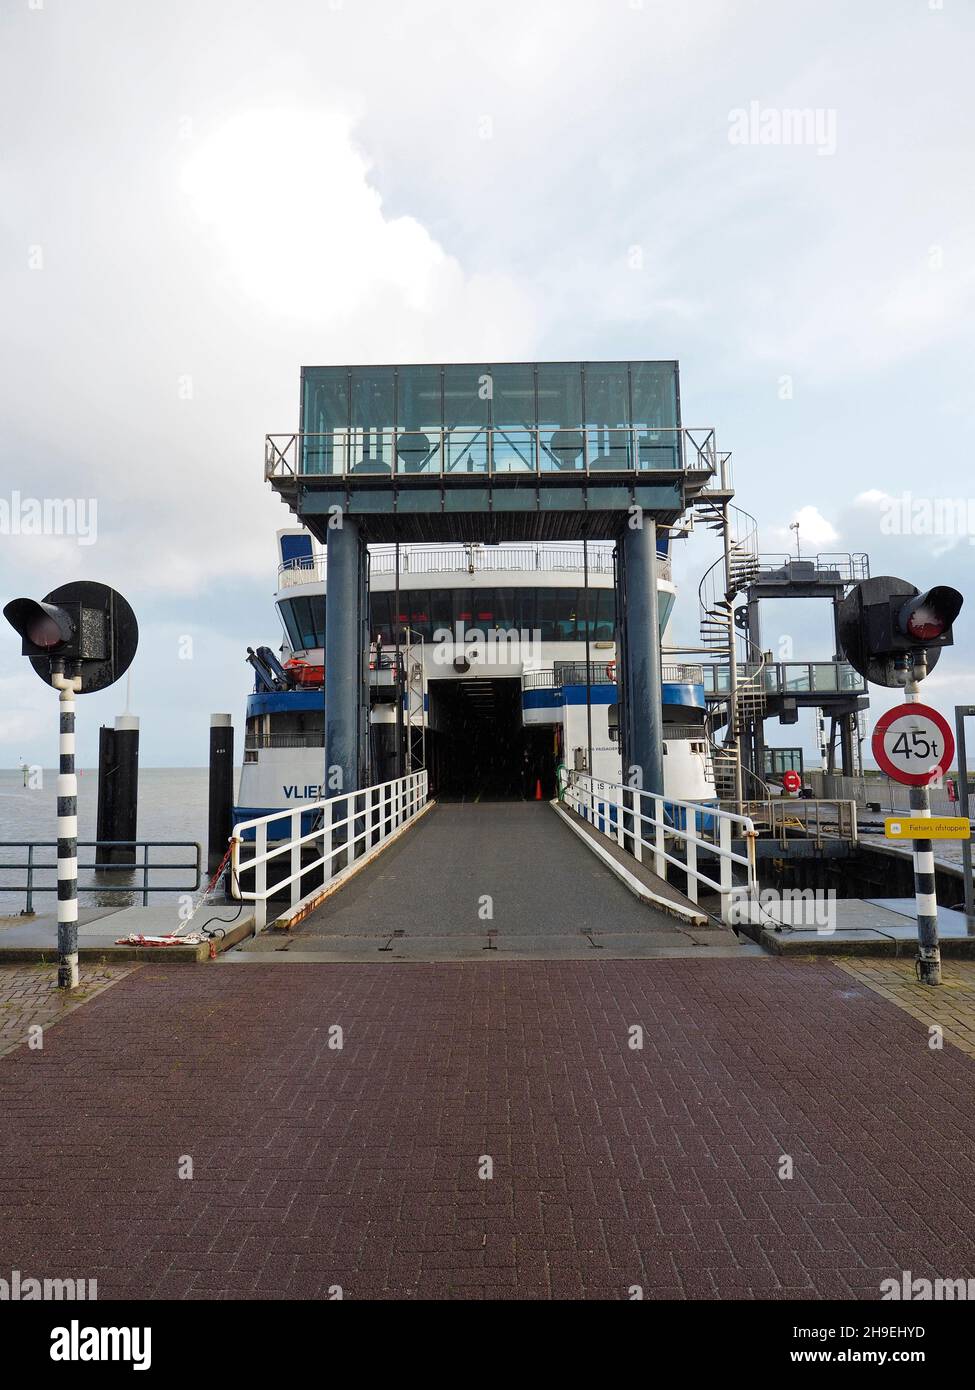 La rampa de coches del ferry desde la isla de Vlieland a Harlingen, Friesland, Holanda. El viaje sobre el mar poco profundo de Wadden dura unos 90 minutos. Foto de stock